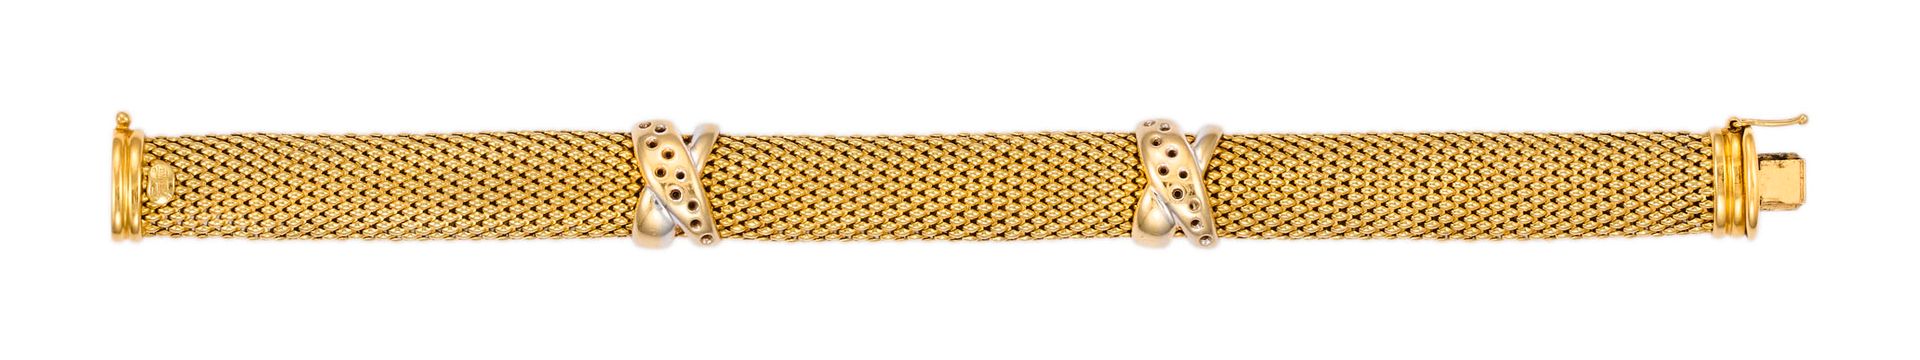 Bracelet maille souple en or bicolore

L : 19,5 cm - l : 1,3 cm

Pb : 37,29 g (1&hellip;